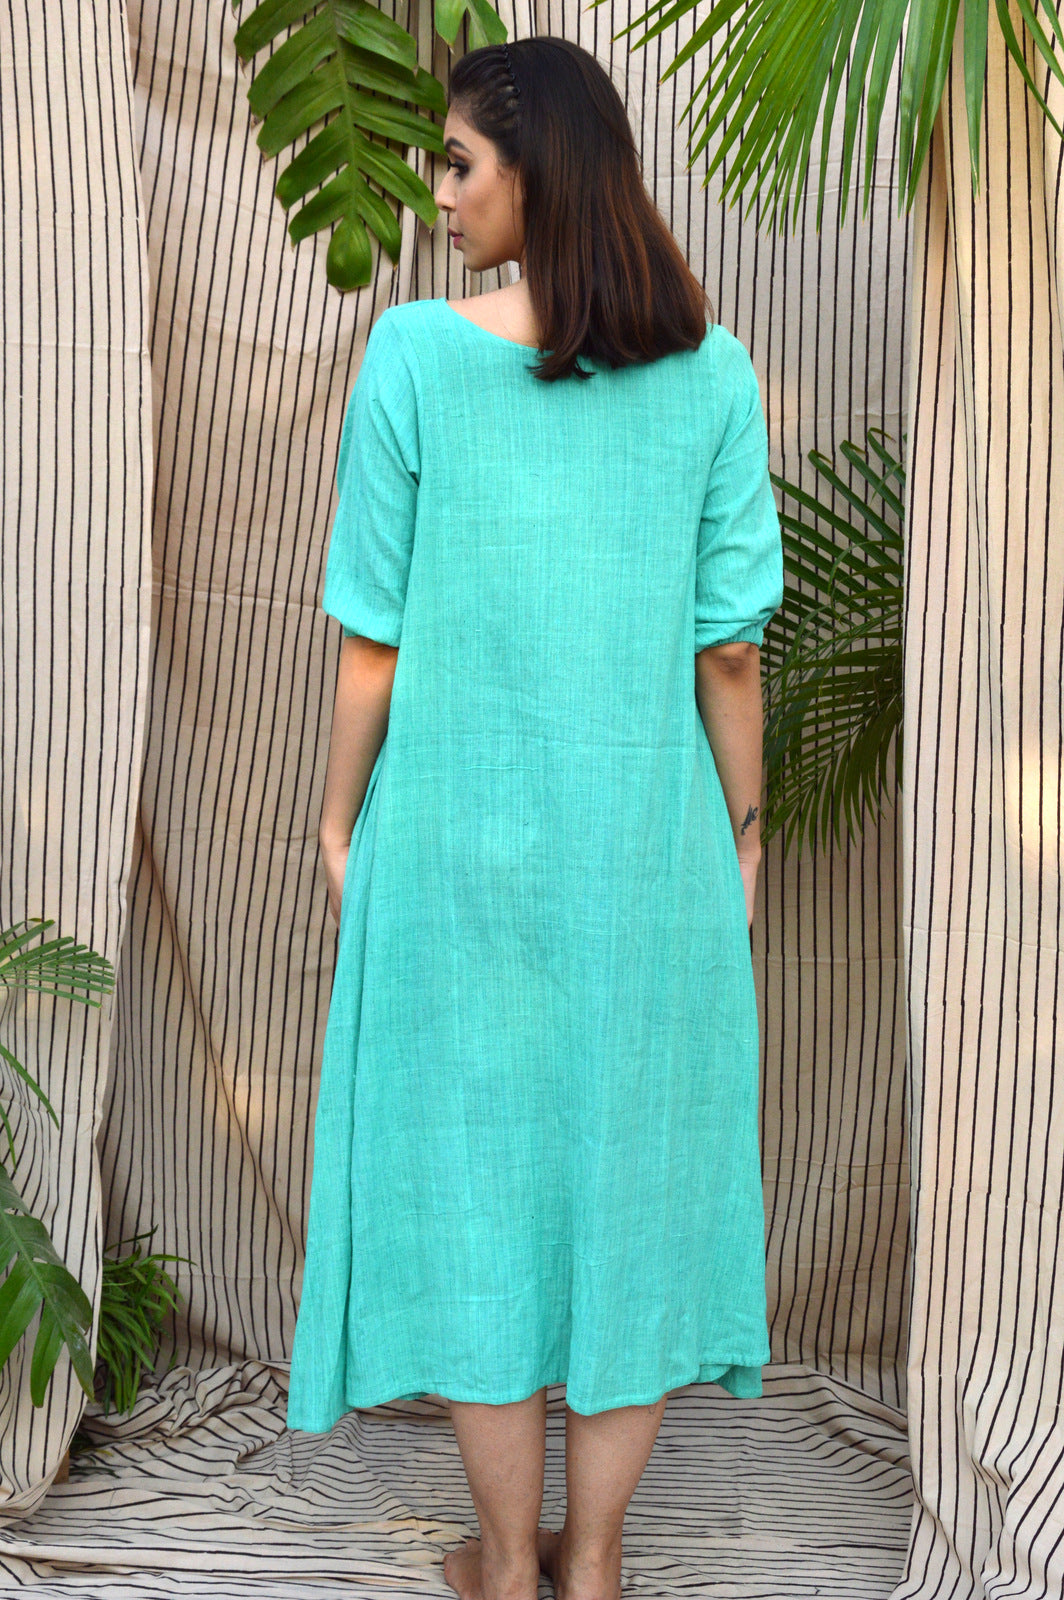 Turquoise Applique dress